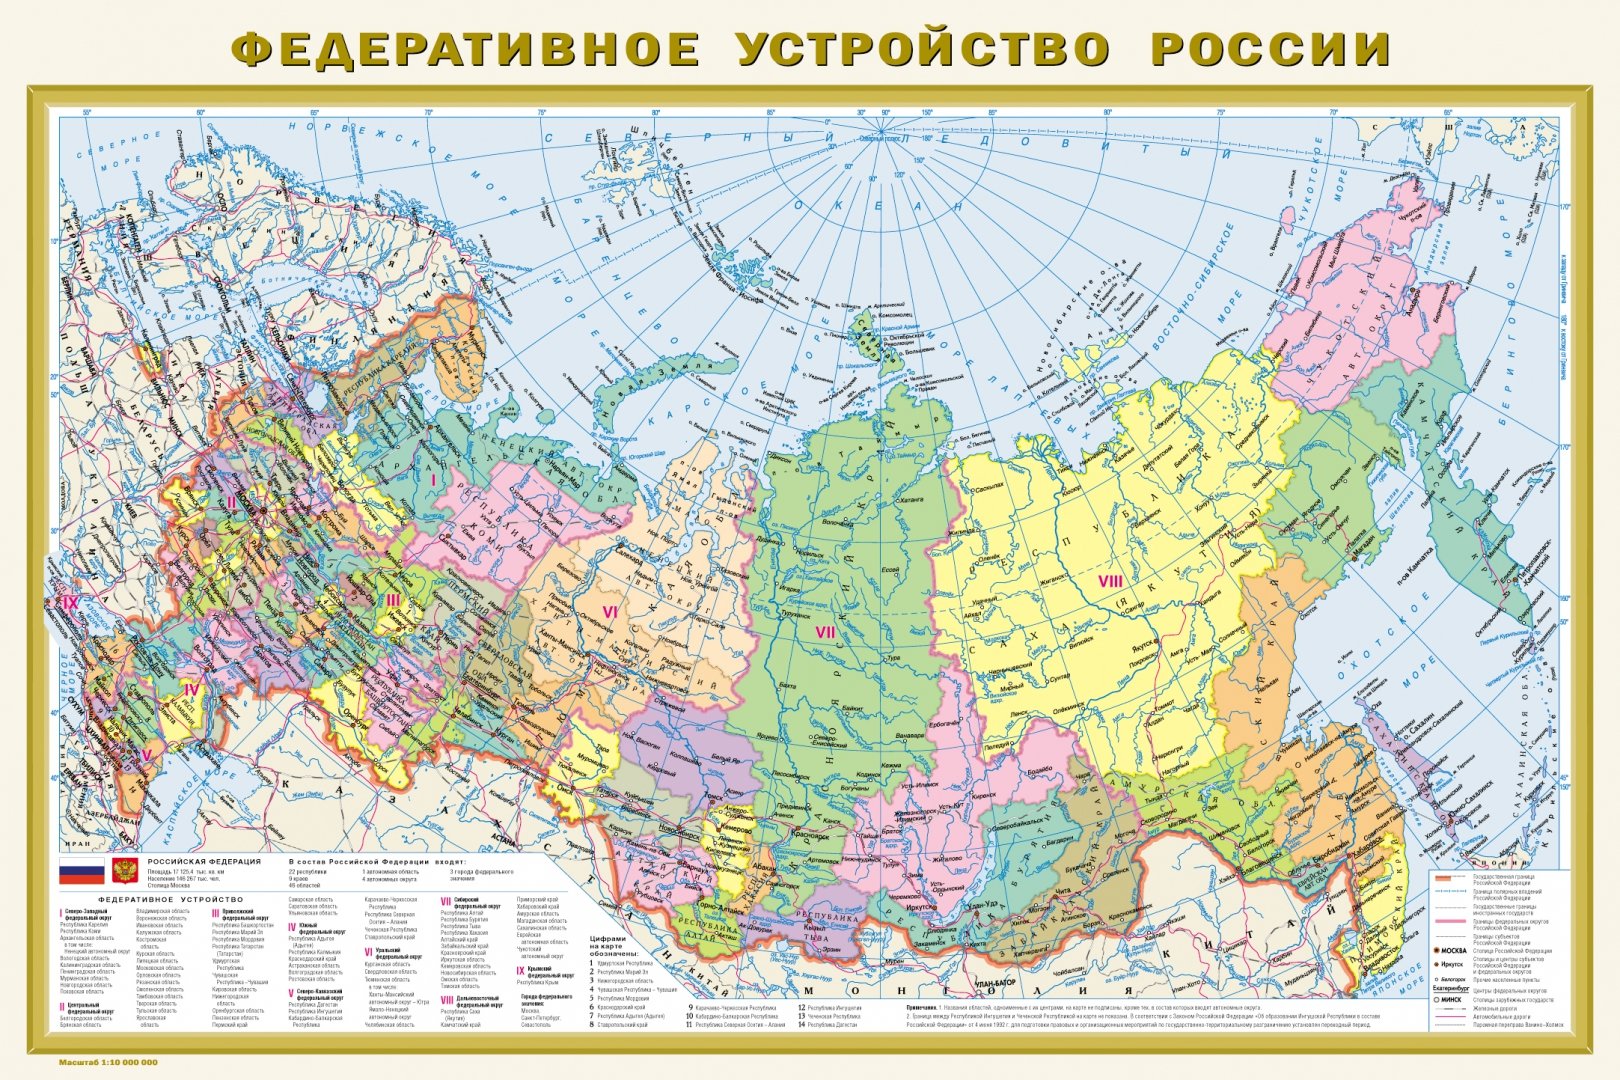 Иллюстрация 1 из 4 для Политическая карта мира. Федеративное устройство | Лабиринт - книги. Источник: Лабиринт